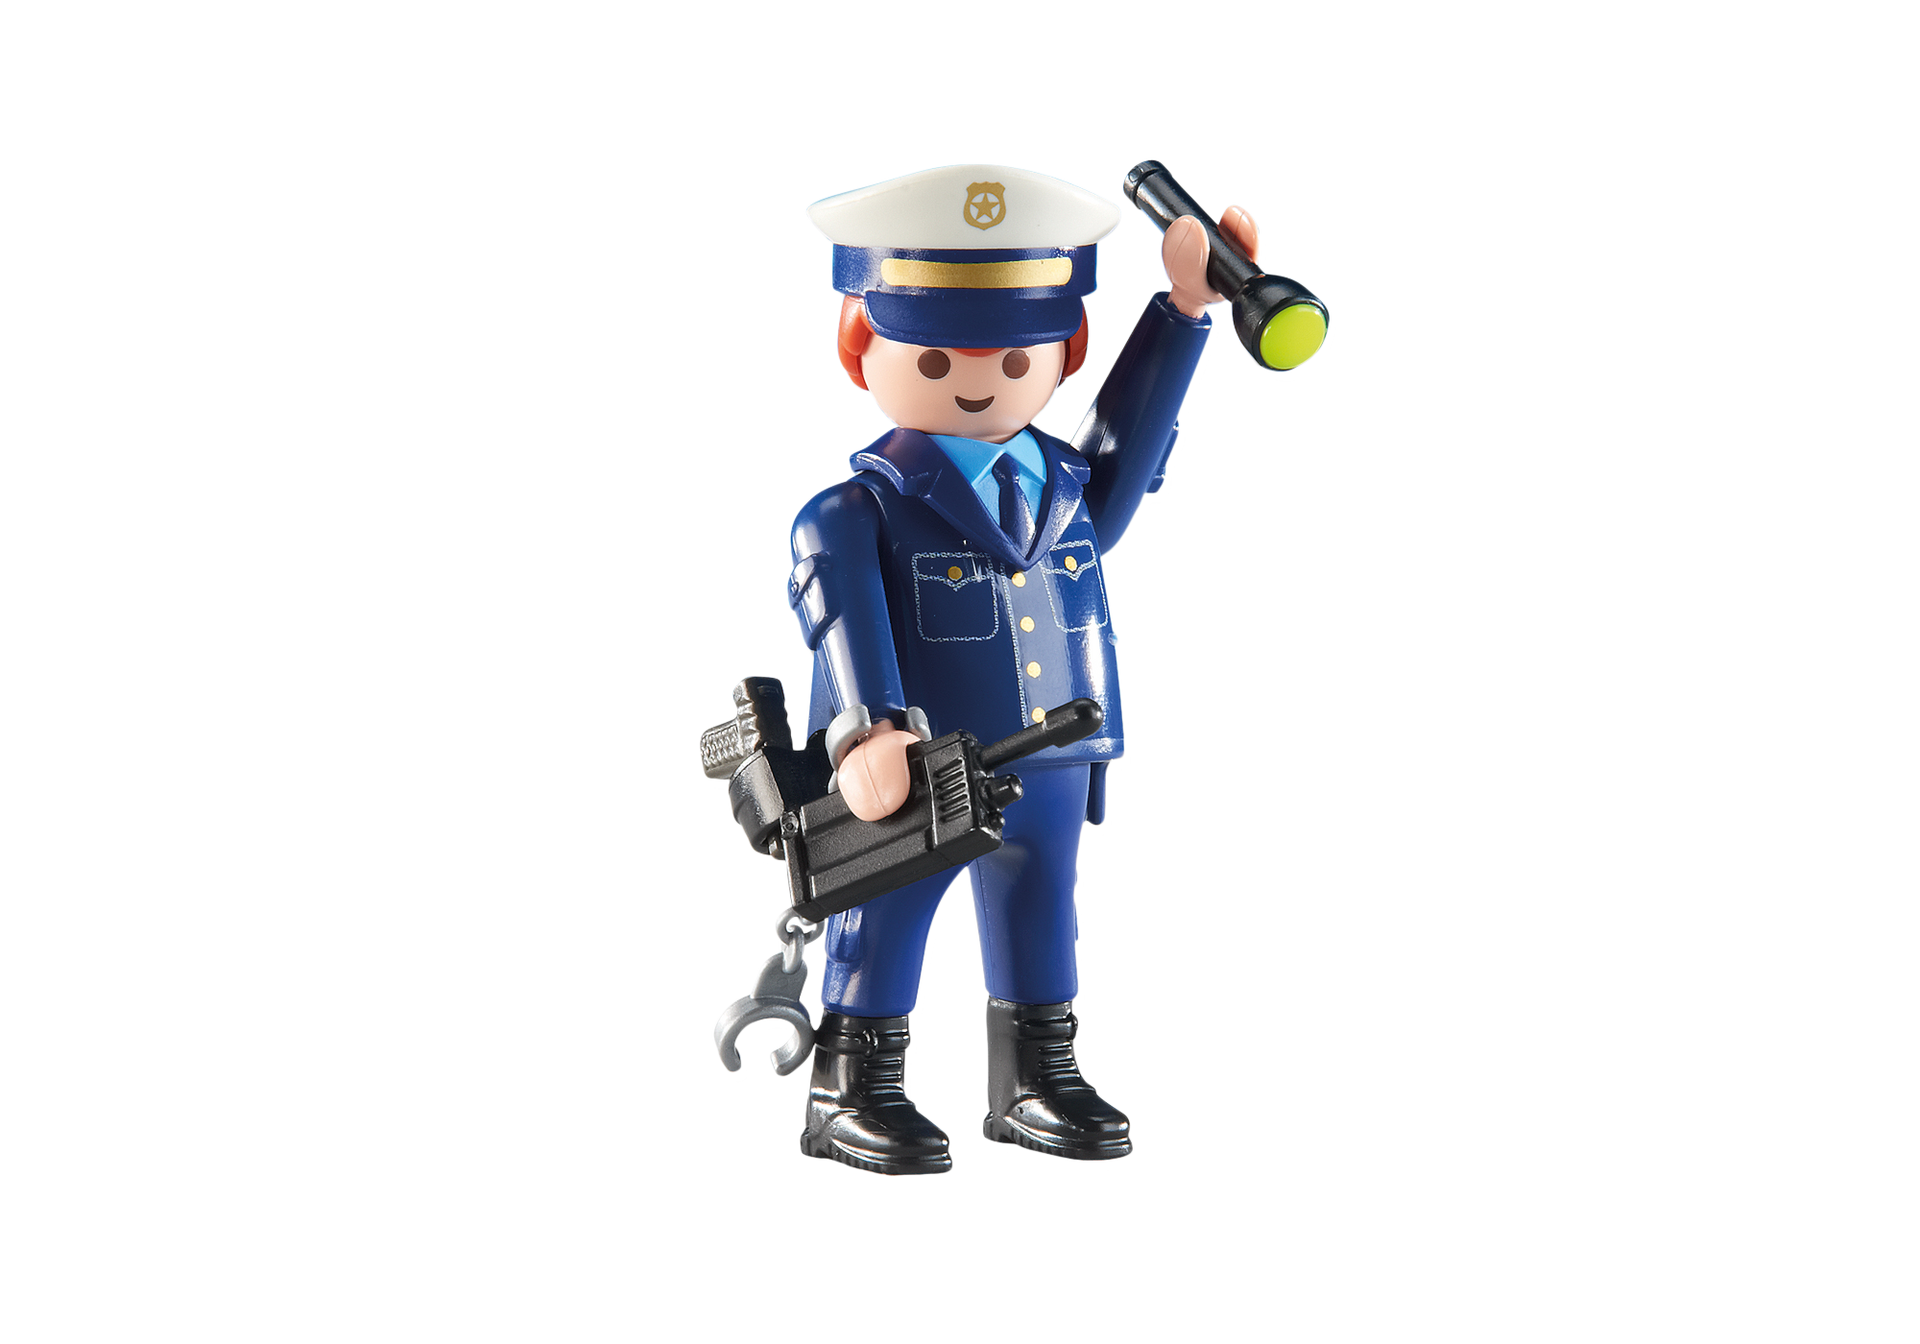 Playmobil 6502 Polizisten Chef POLIZEI SEK mit Pistole NEU in OVP 